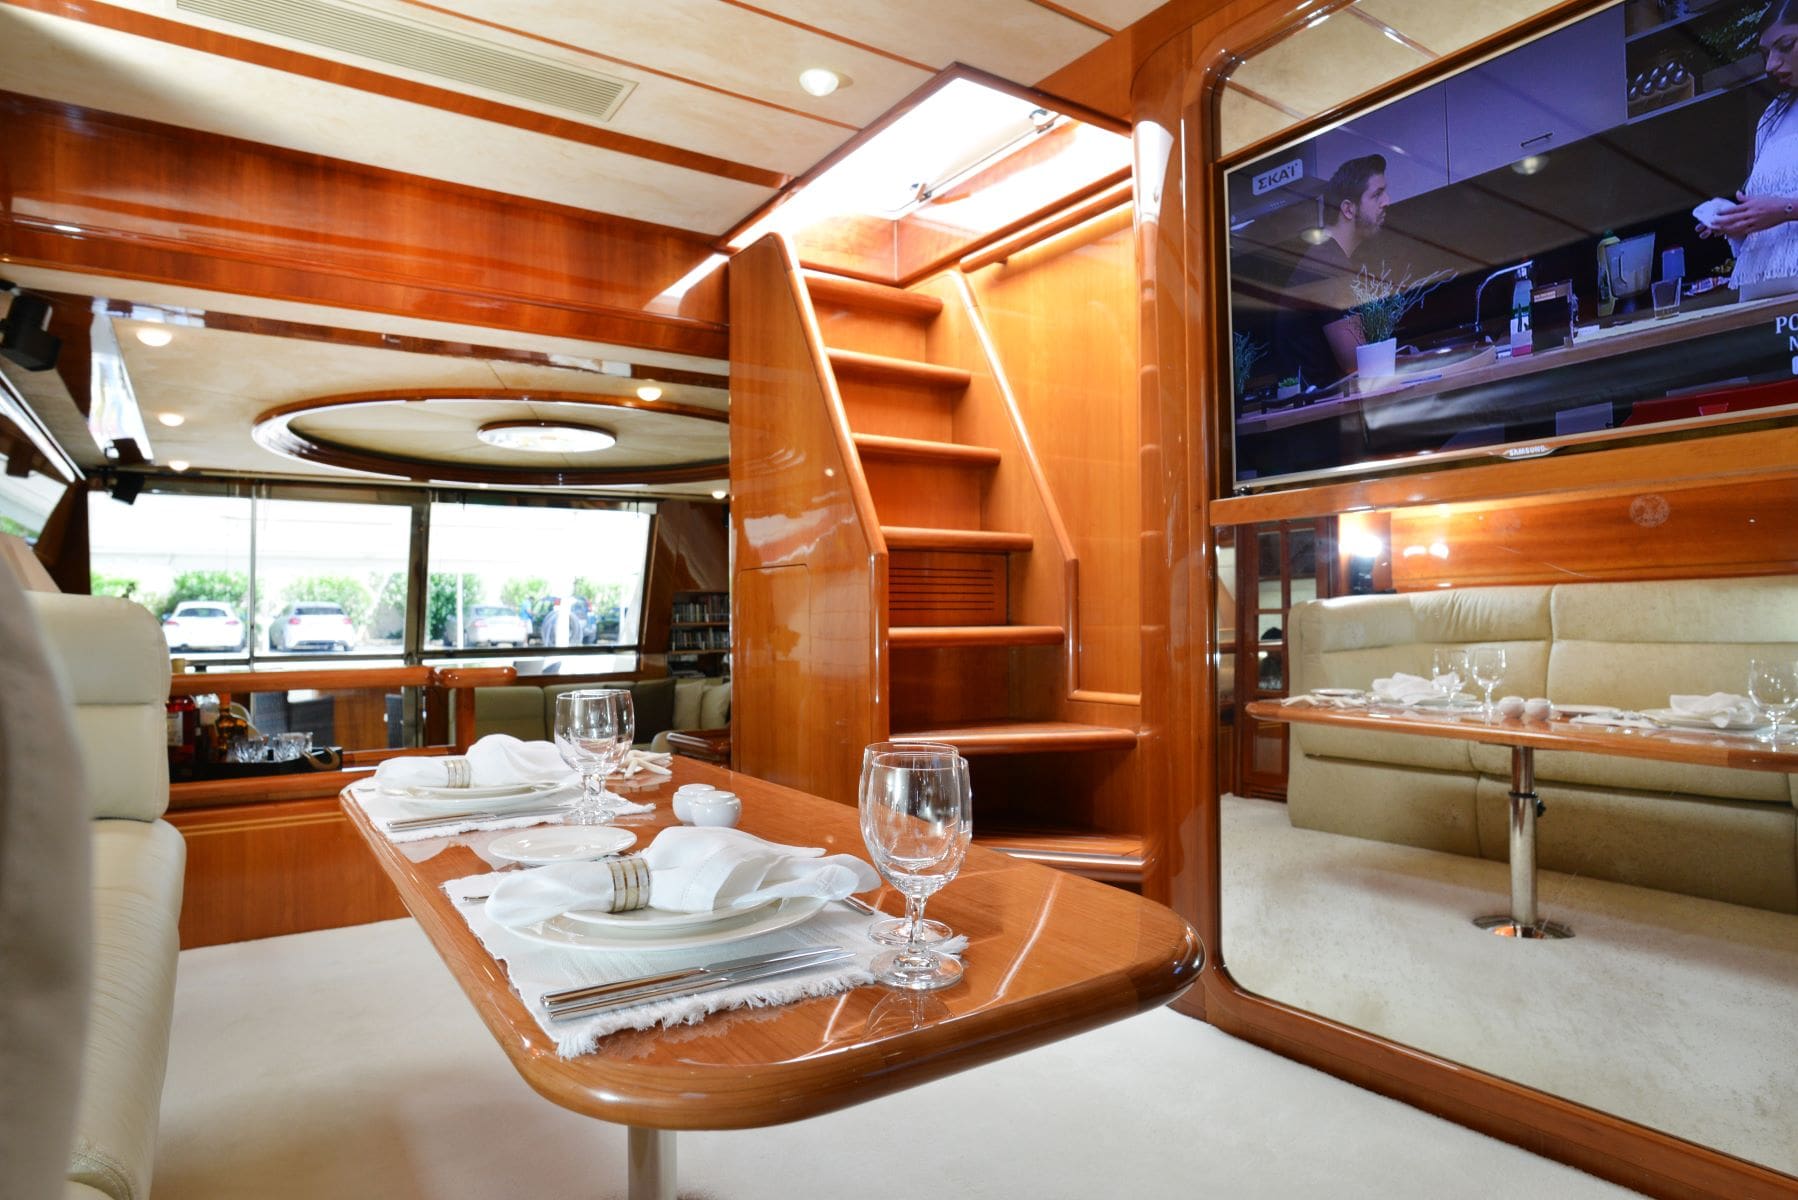 kentavros-motor-yacht-dining-interior (1)-min